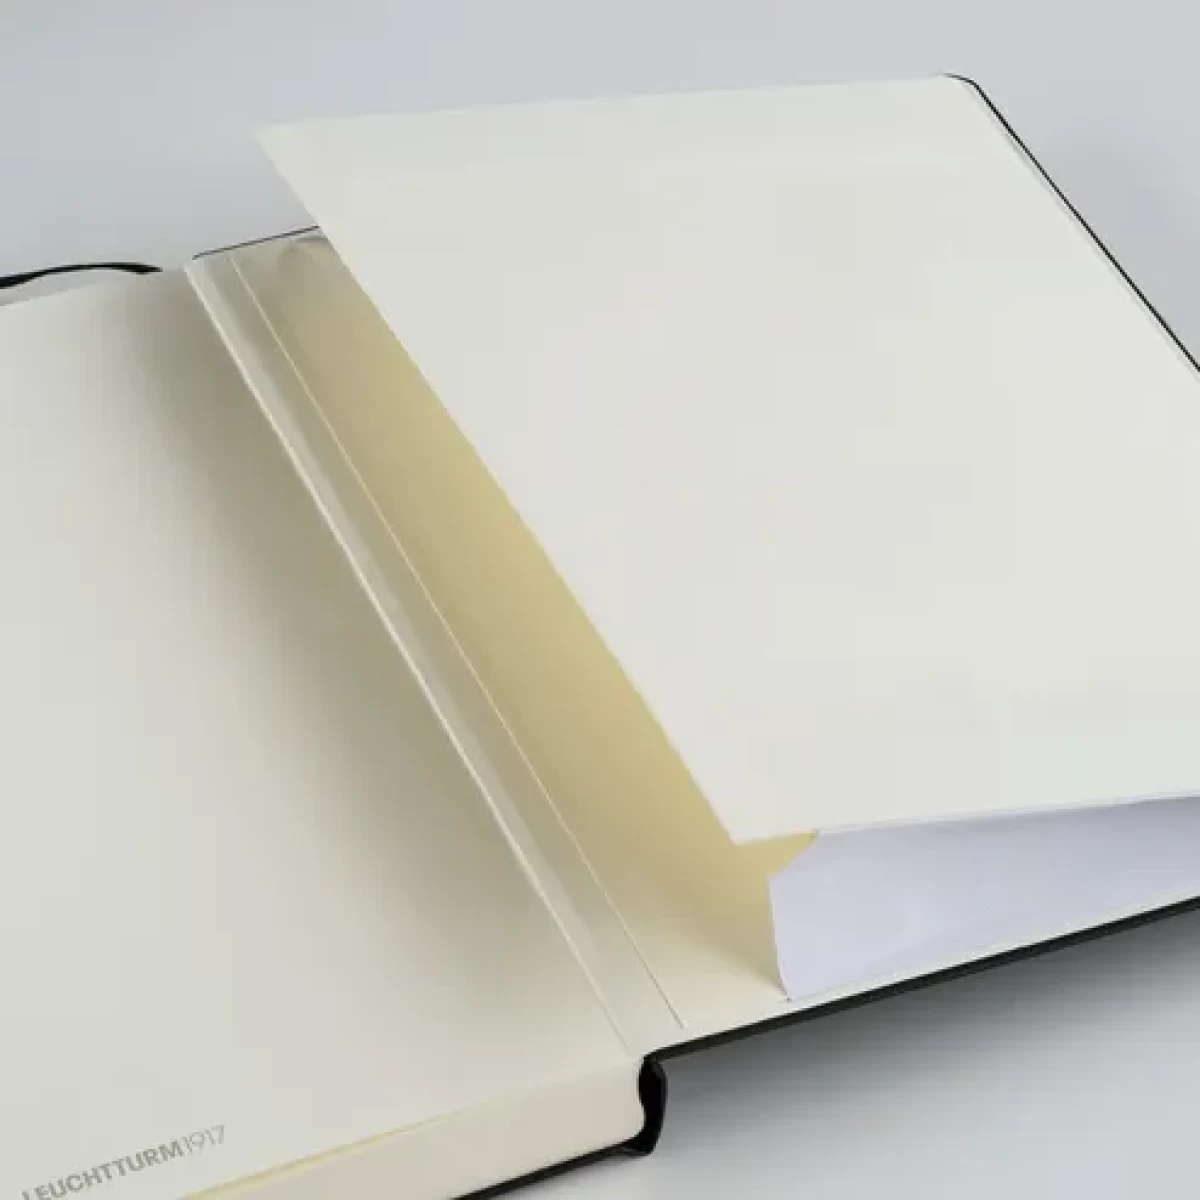 LEUCHTTURM1917 Bauhaus Edition Κίτρινο Σημειωματάριο Α5 - Γκρι Κουκίδες